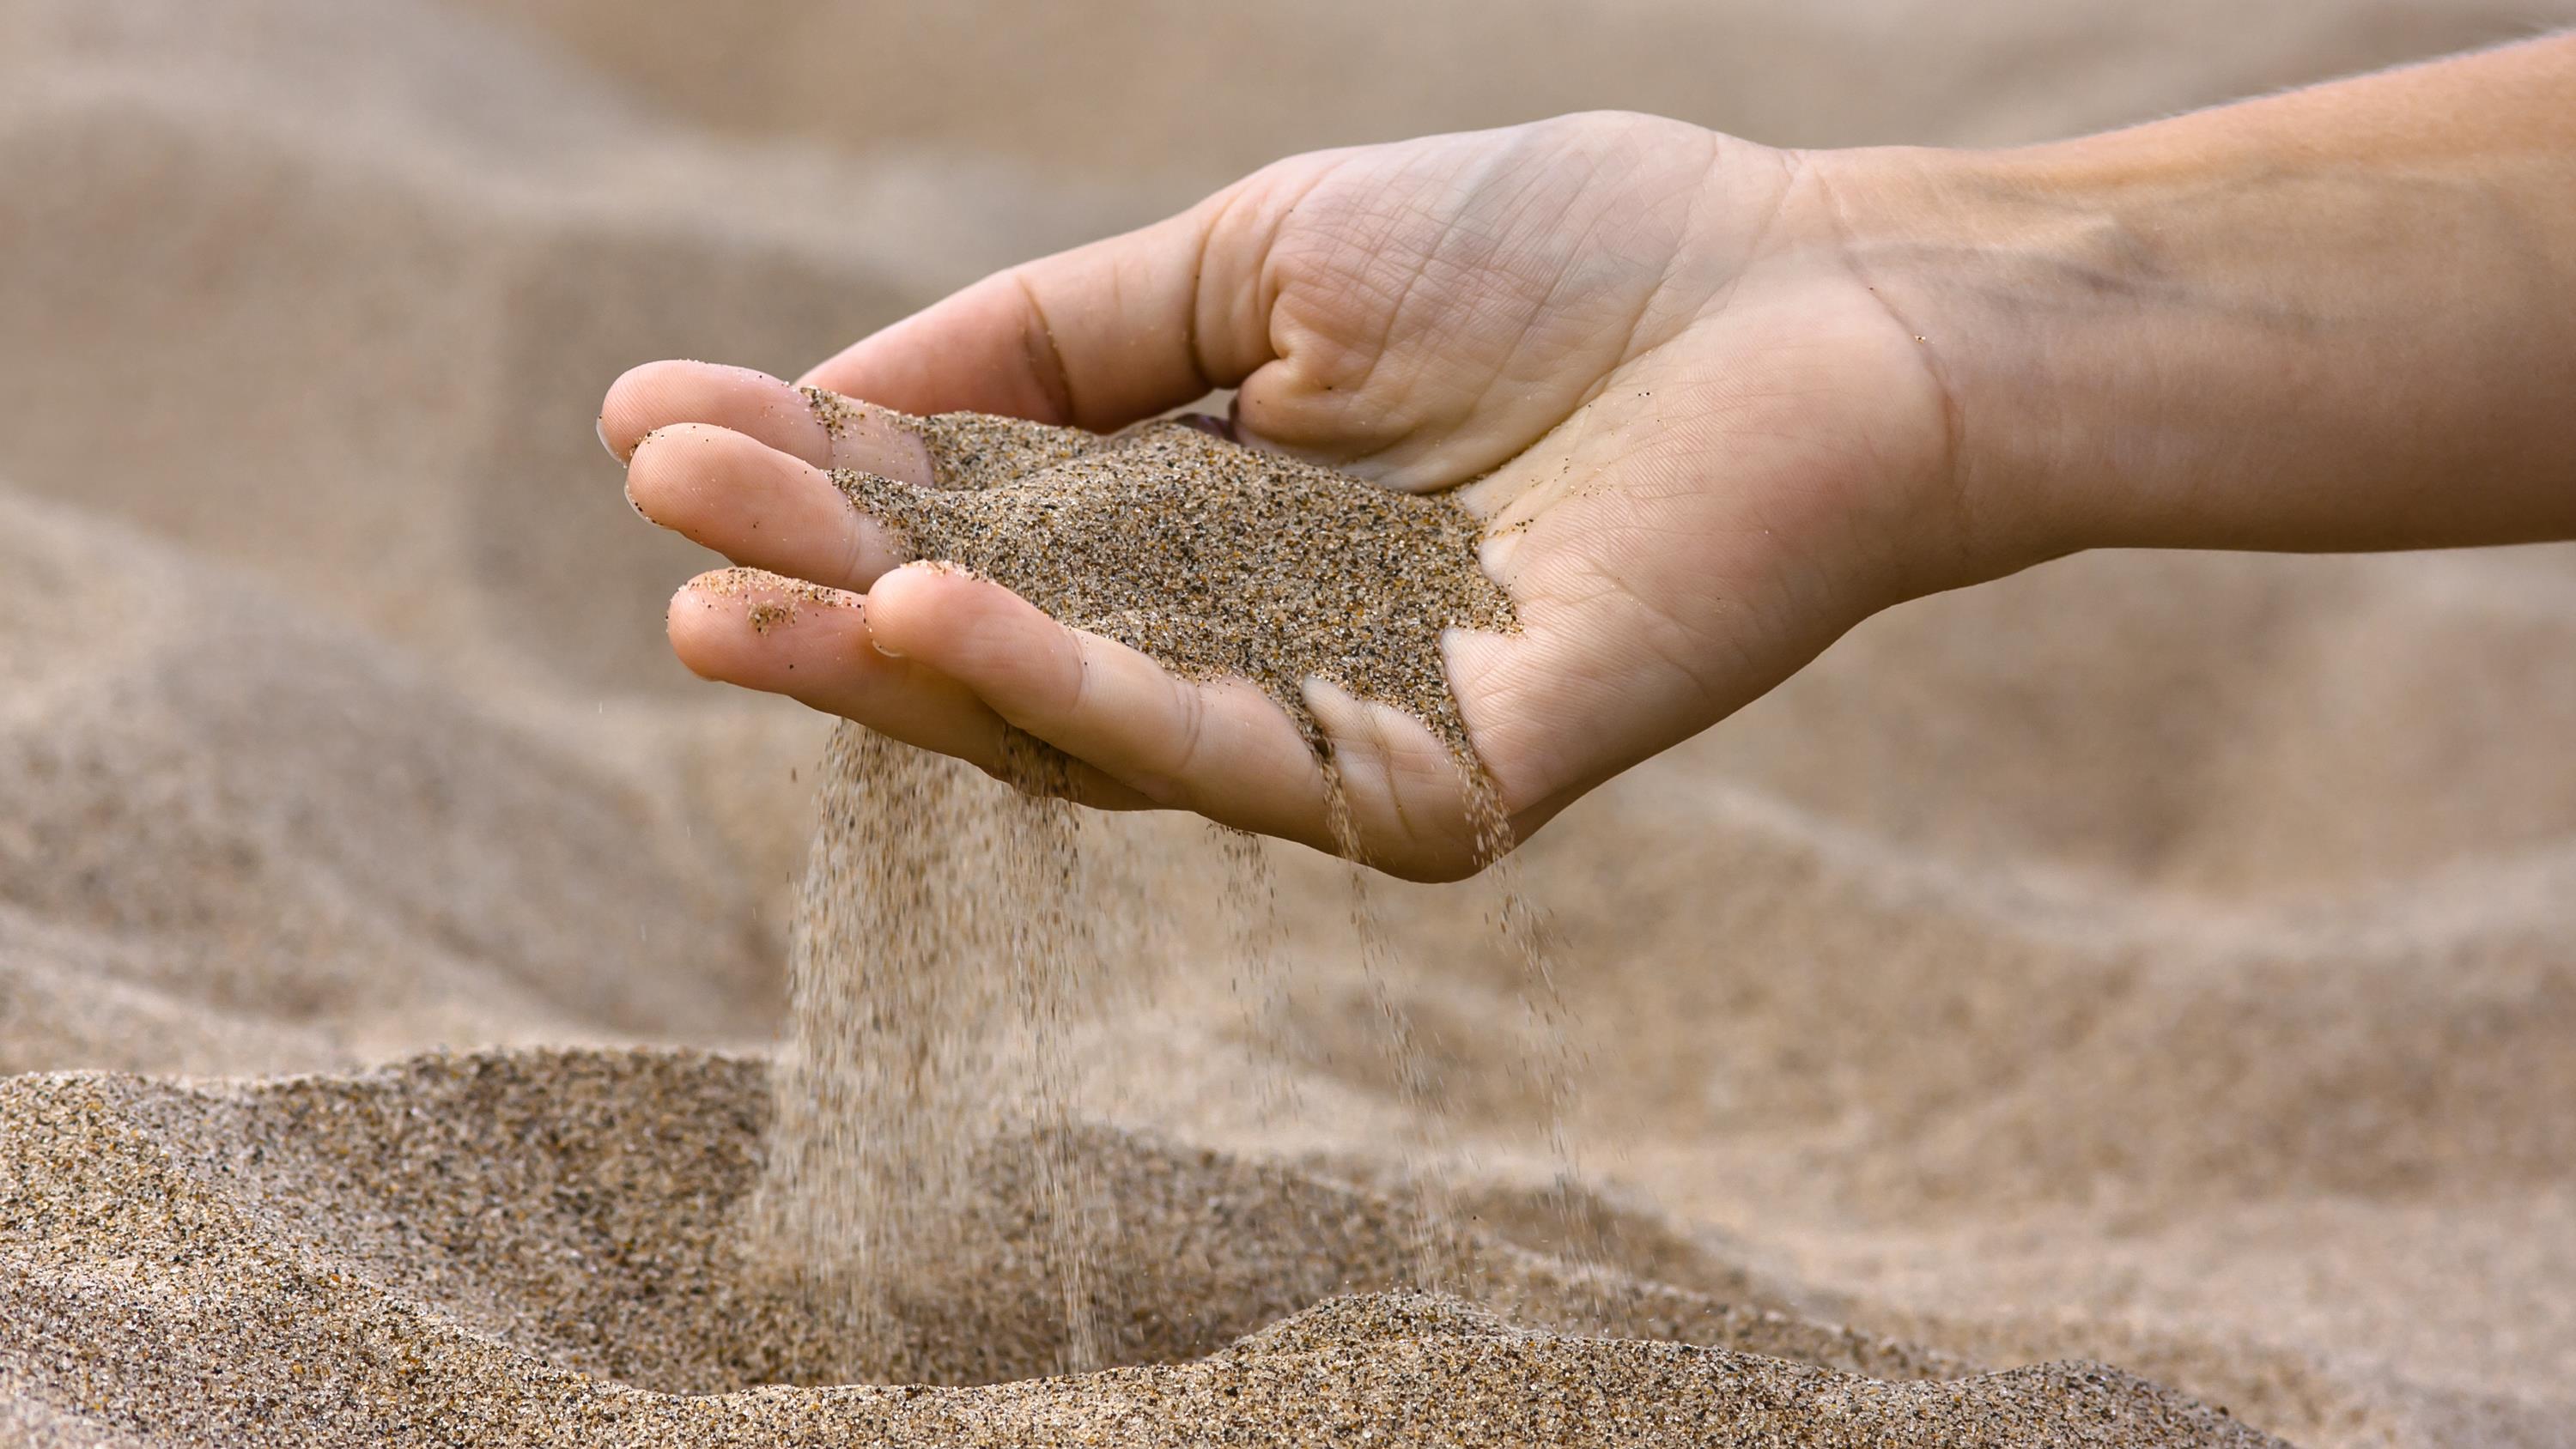 Le sable, une ressource surexploitée - Québec Science